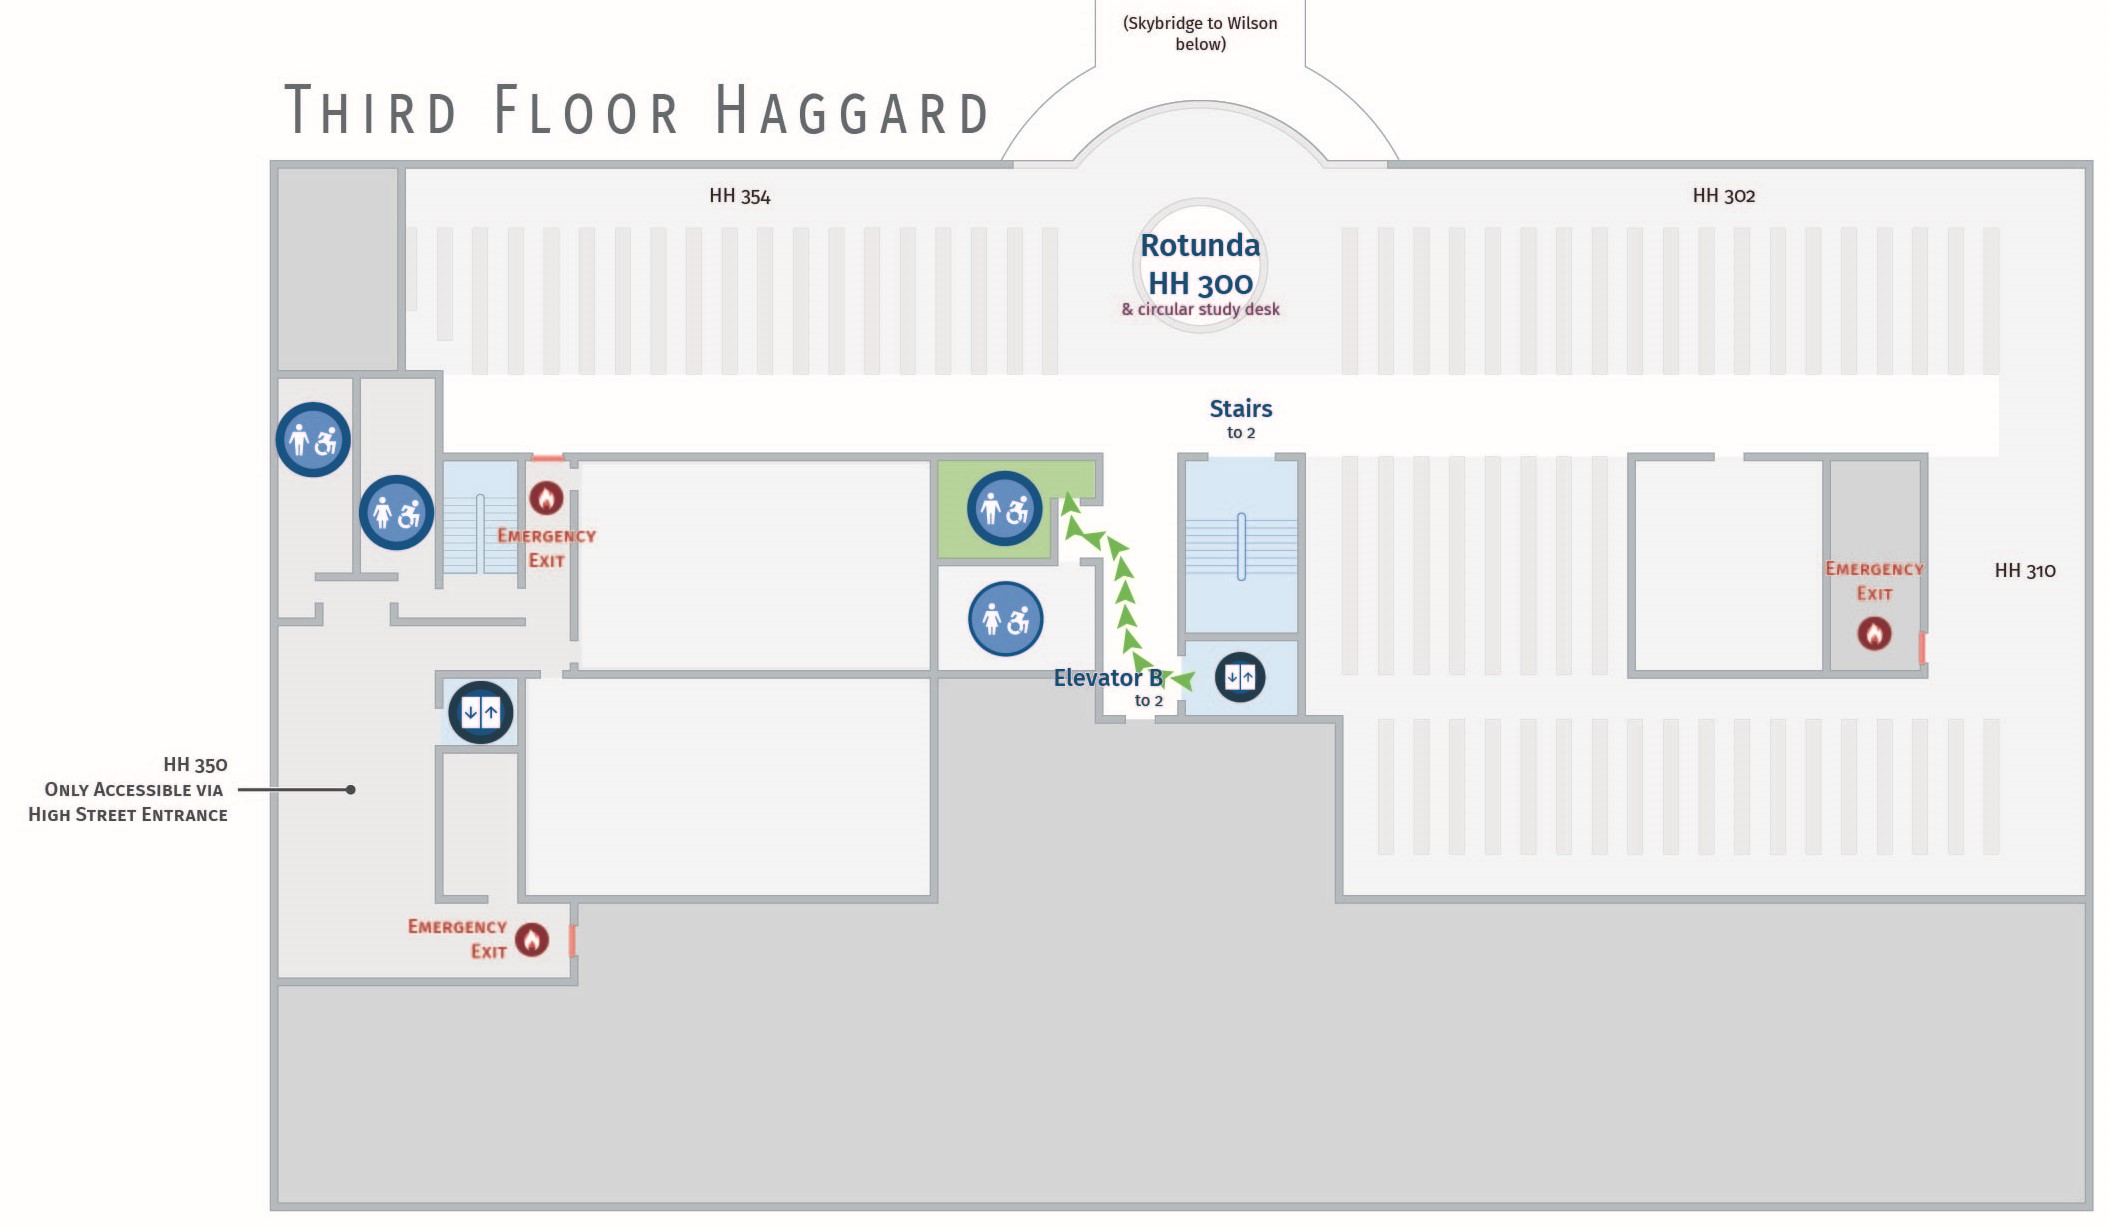 Floor plan, third floor of Haggard with accessible path to men's restroom. Haggard 341.